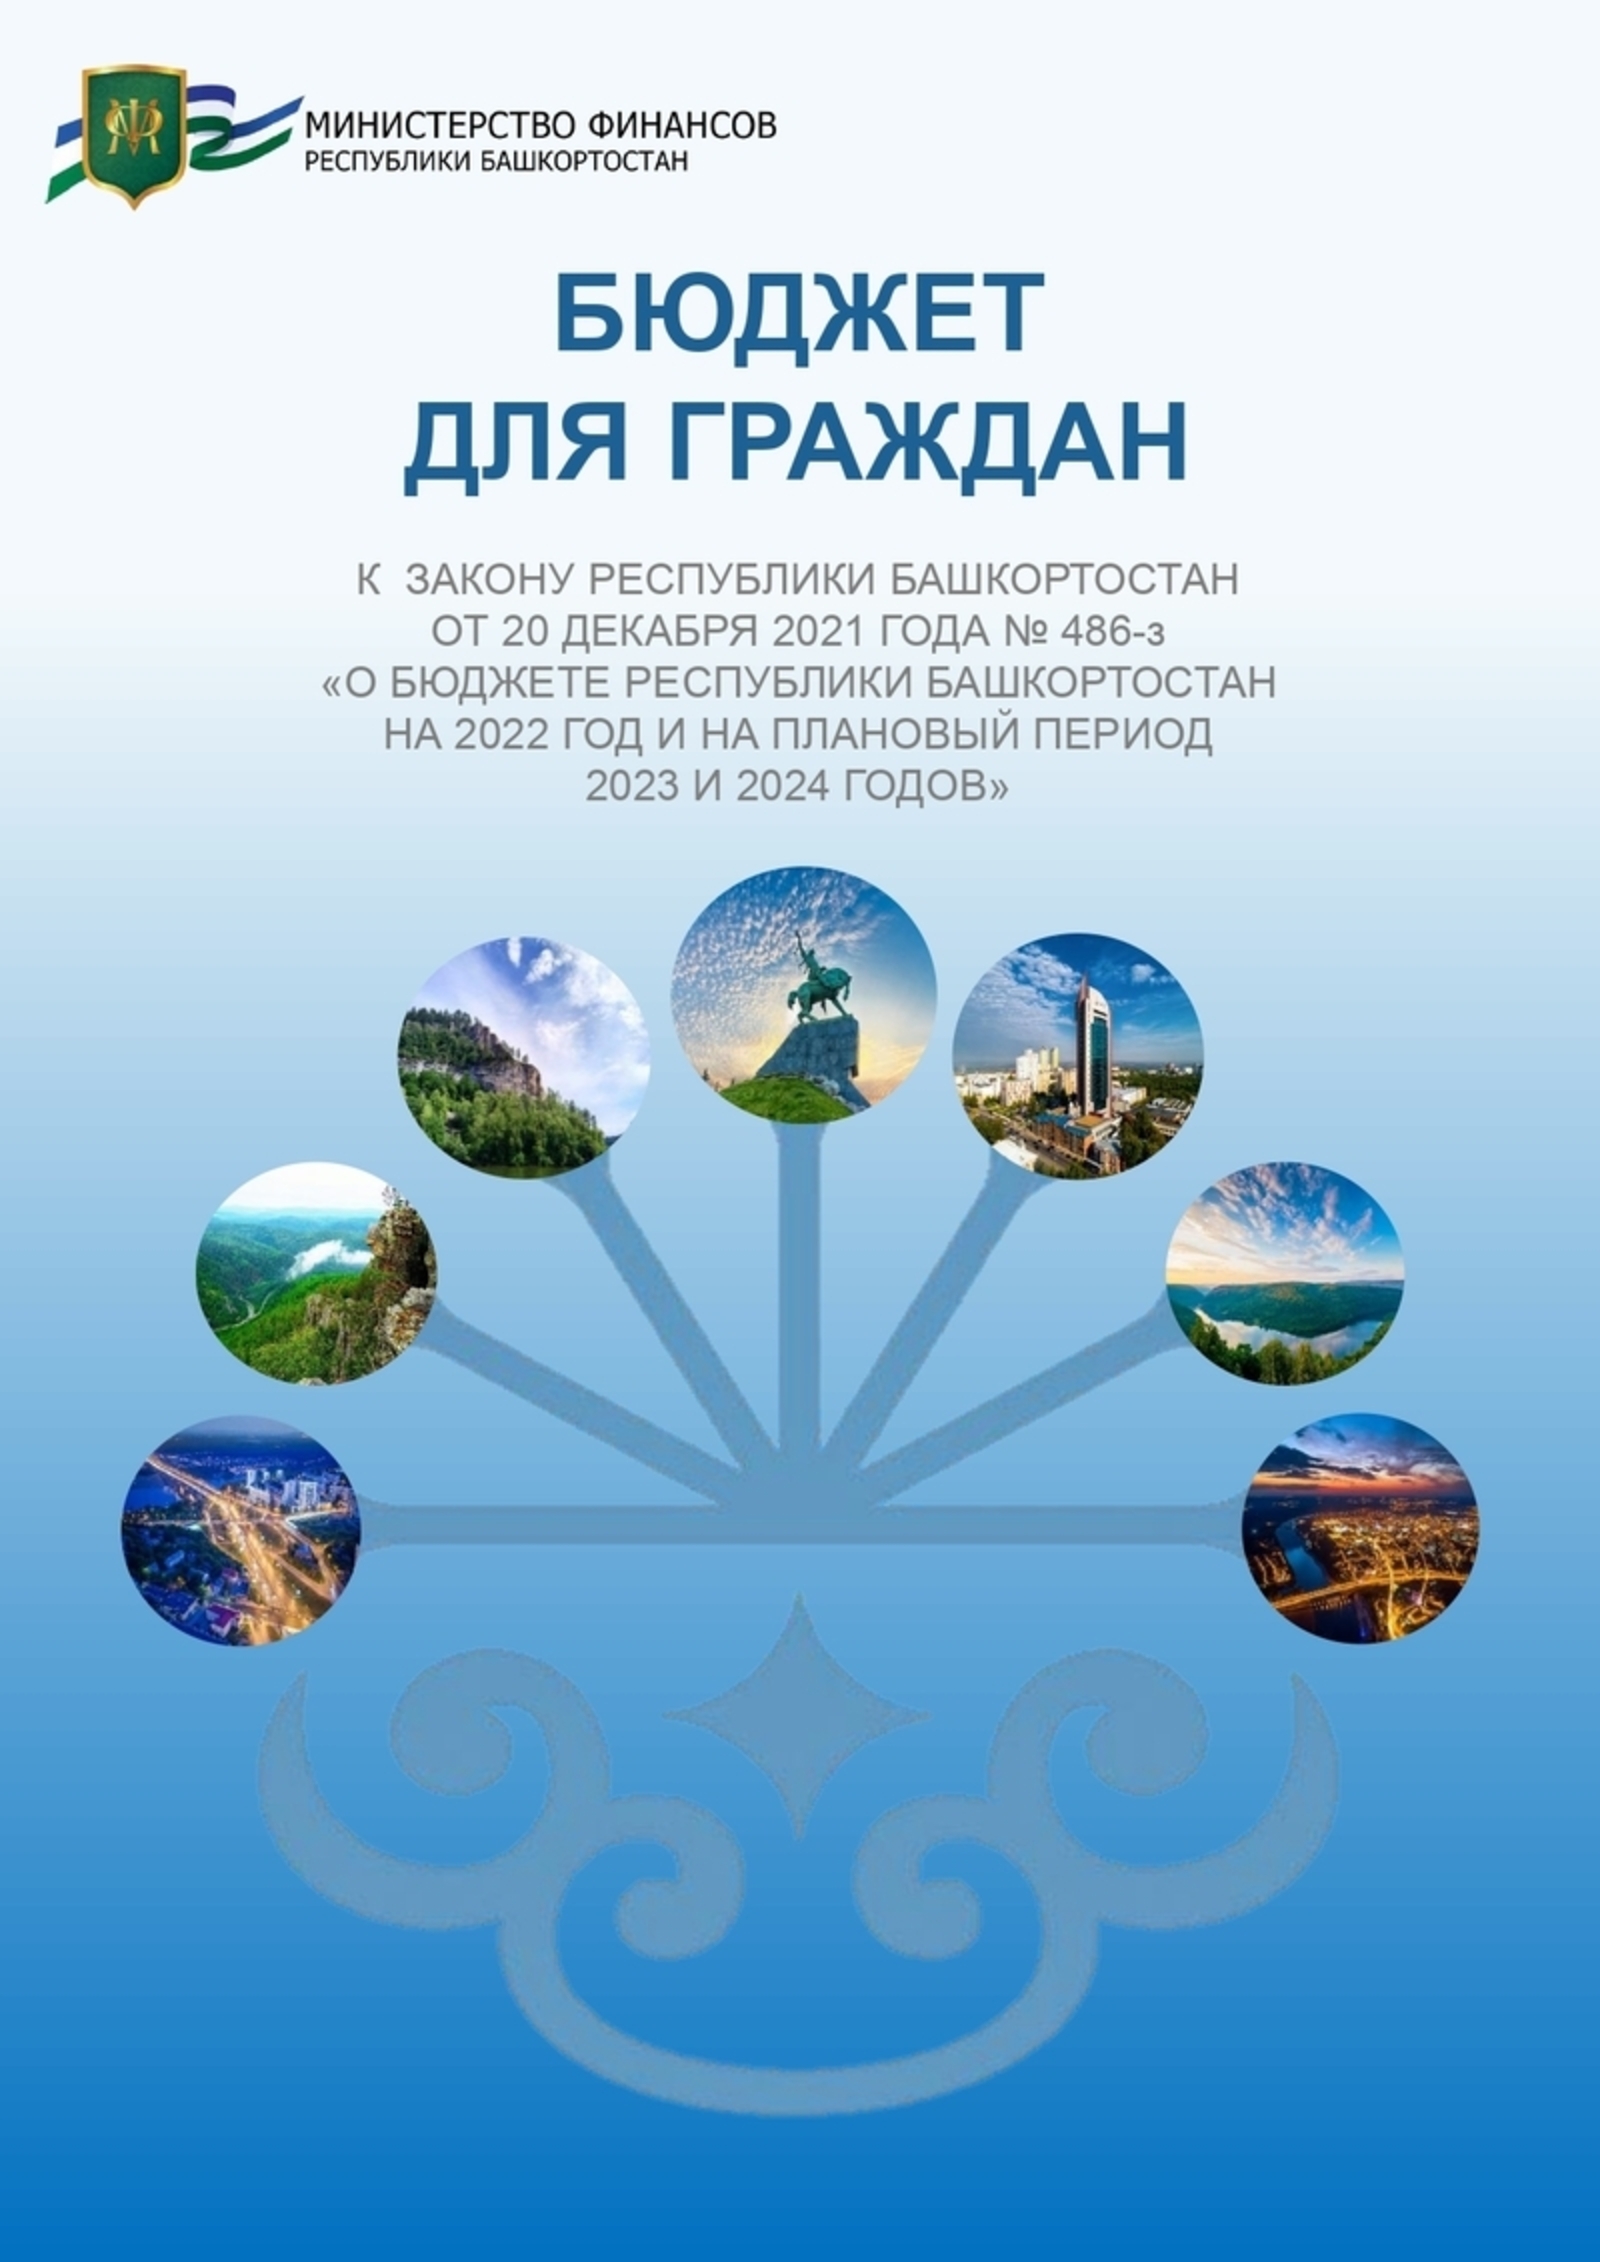 Принят Закон Республики Башкортостан «О бюджете Республики Башкортостан на 2022 год и на плановый период 2023 и 2024 годов»